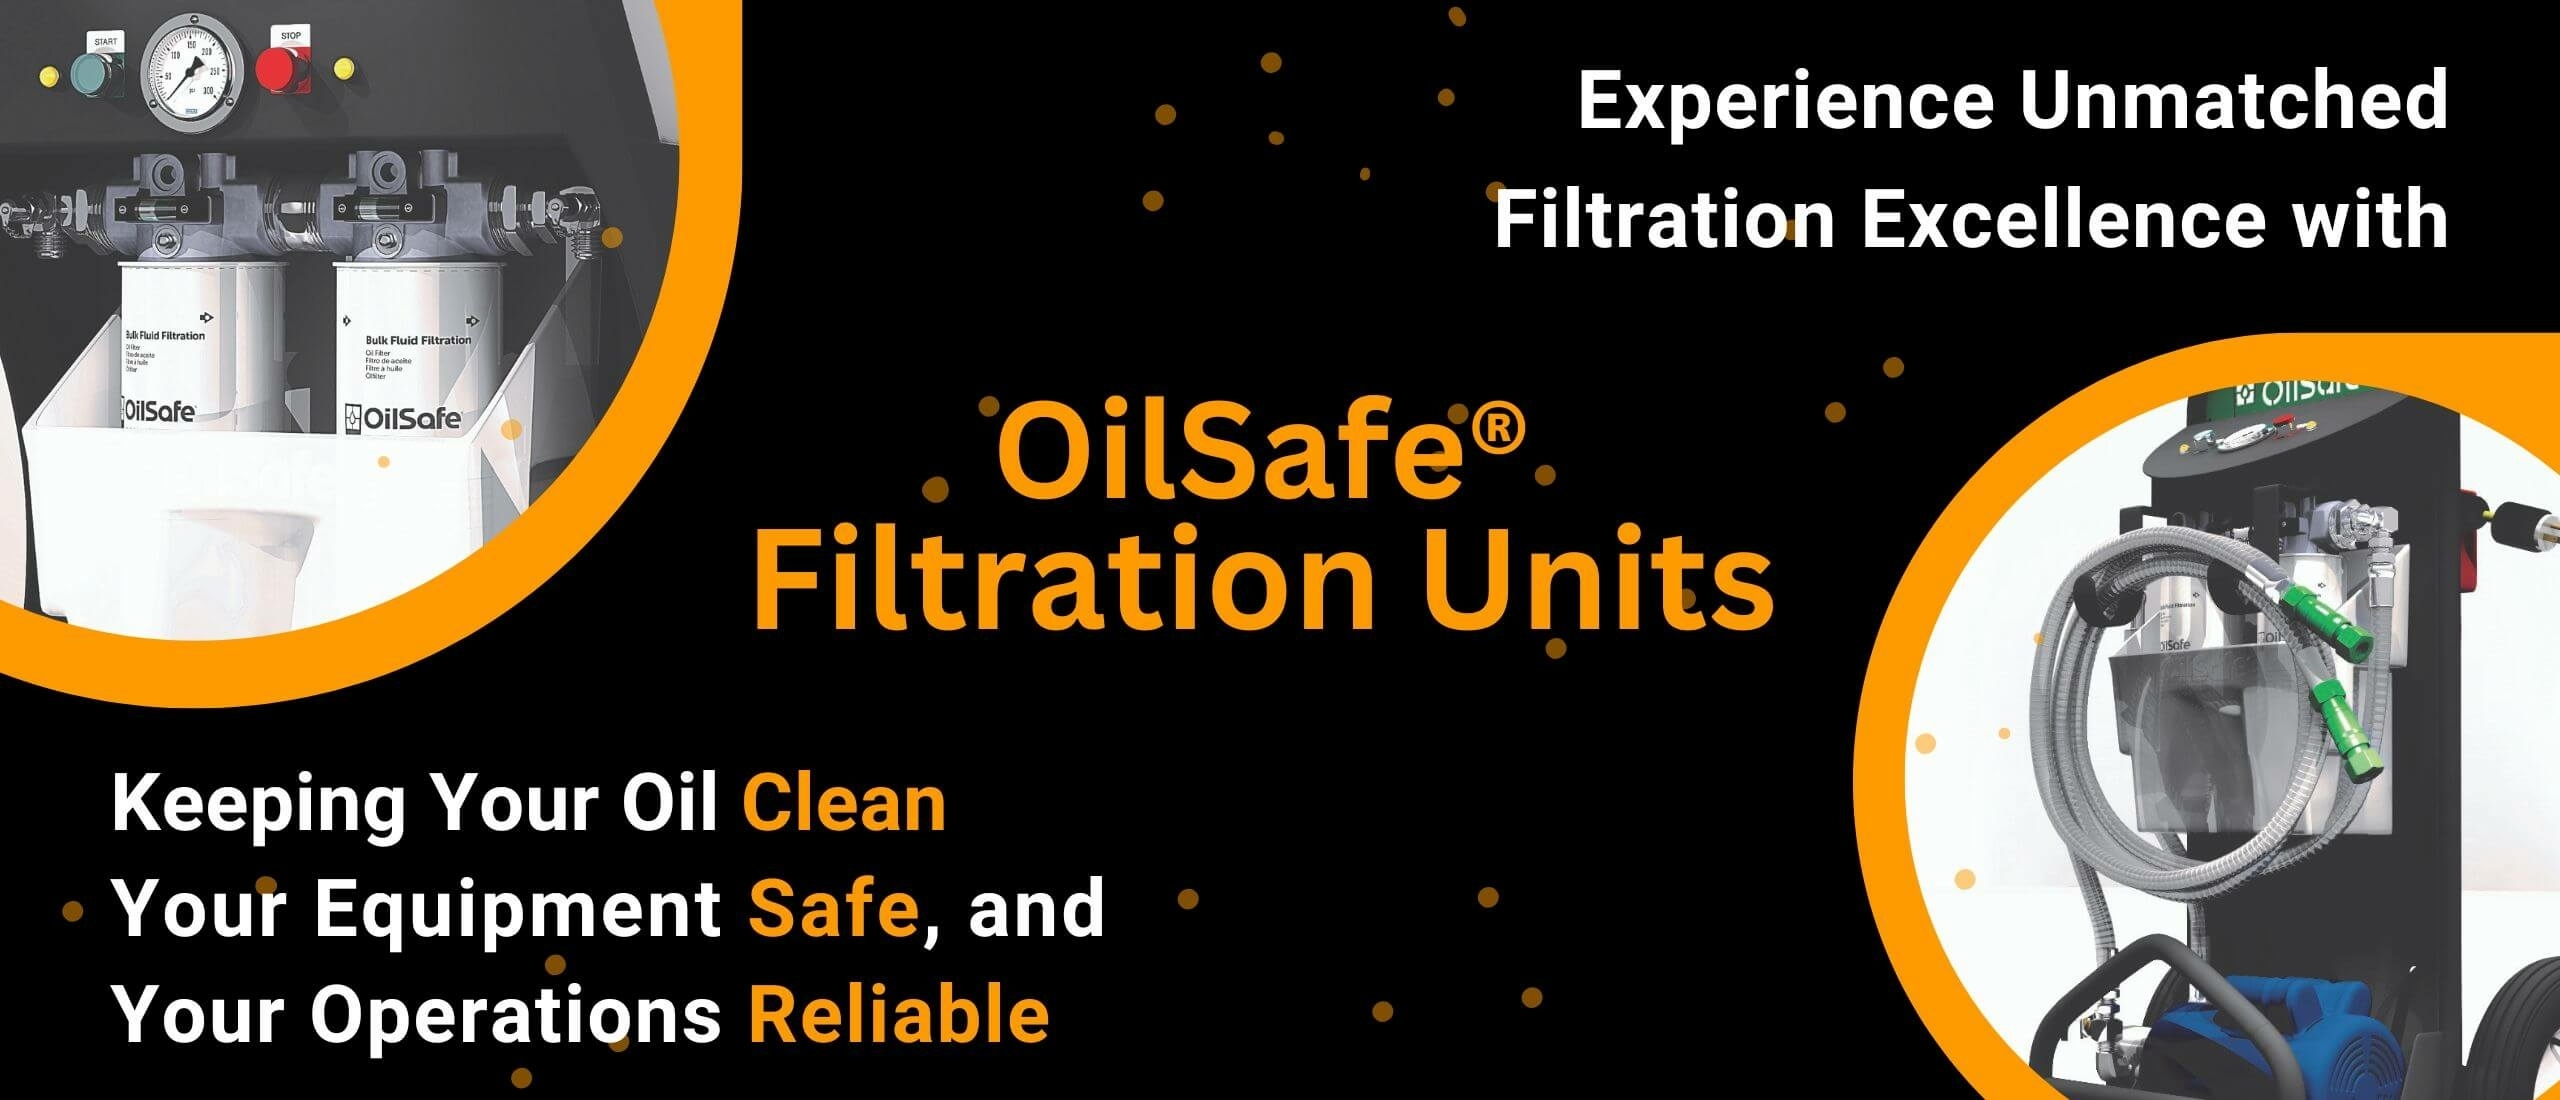 OilSafe Filtration Units